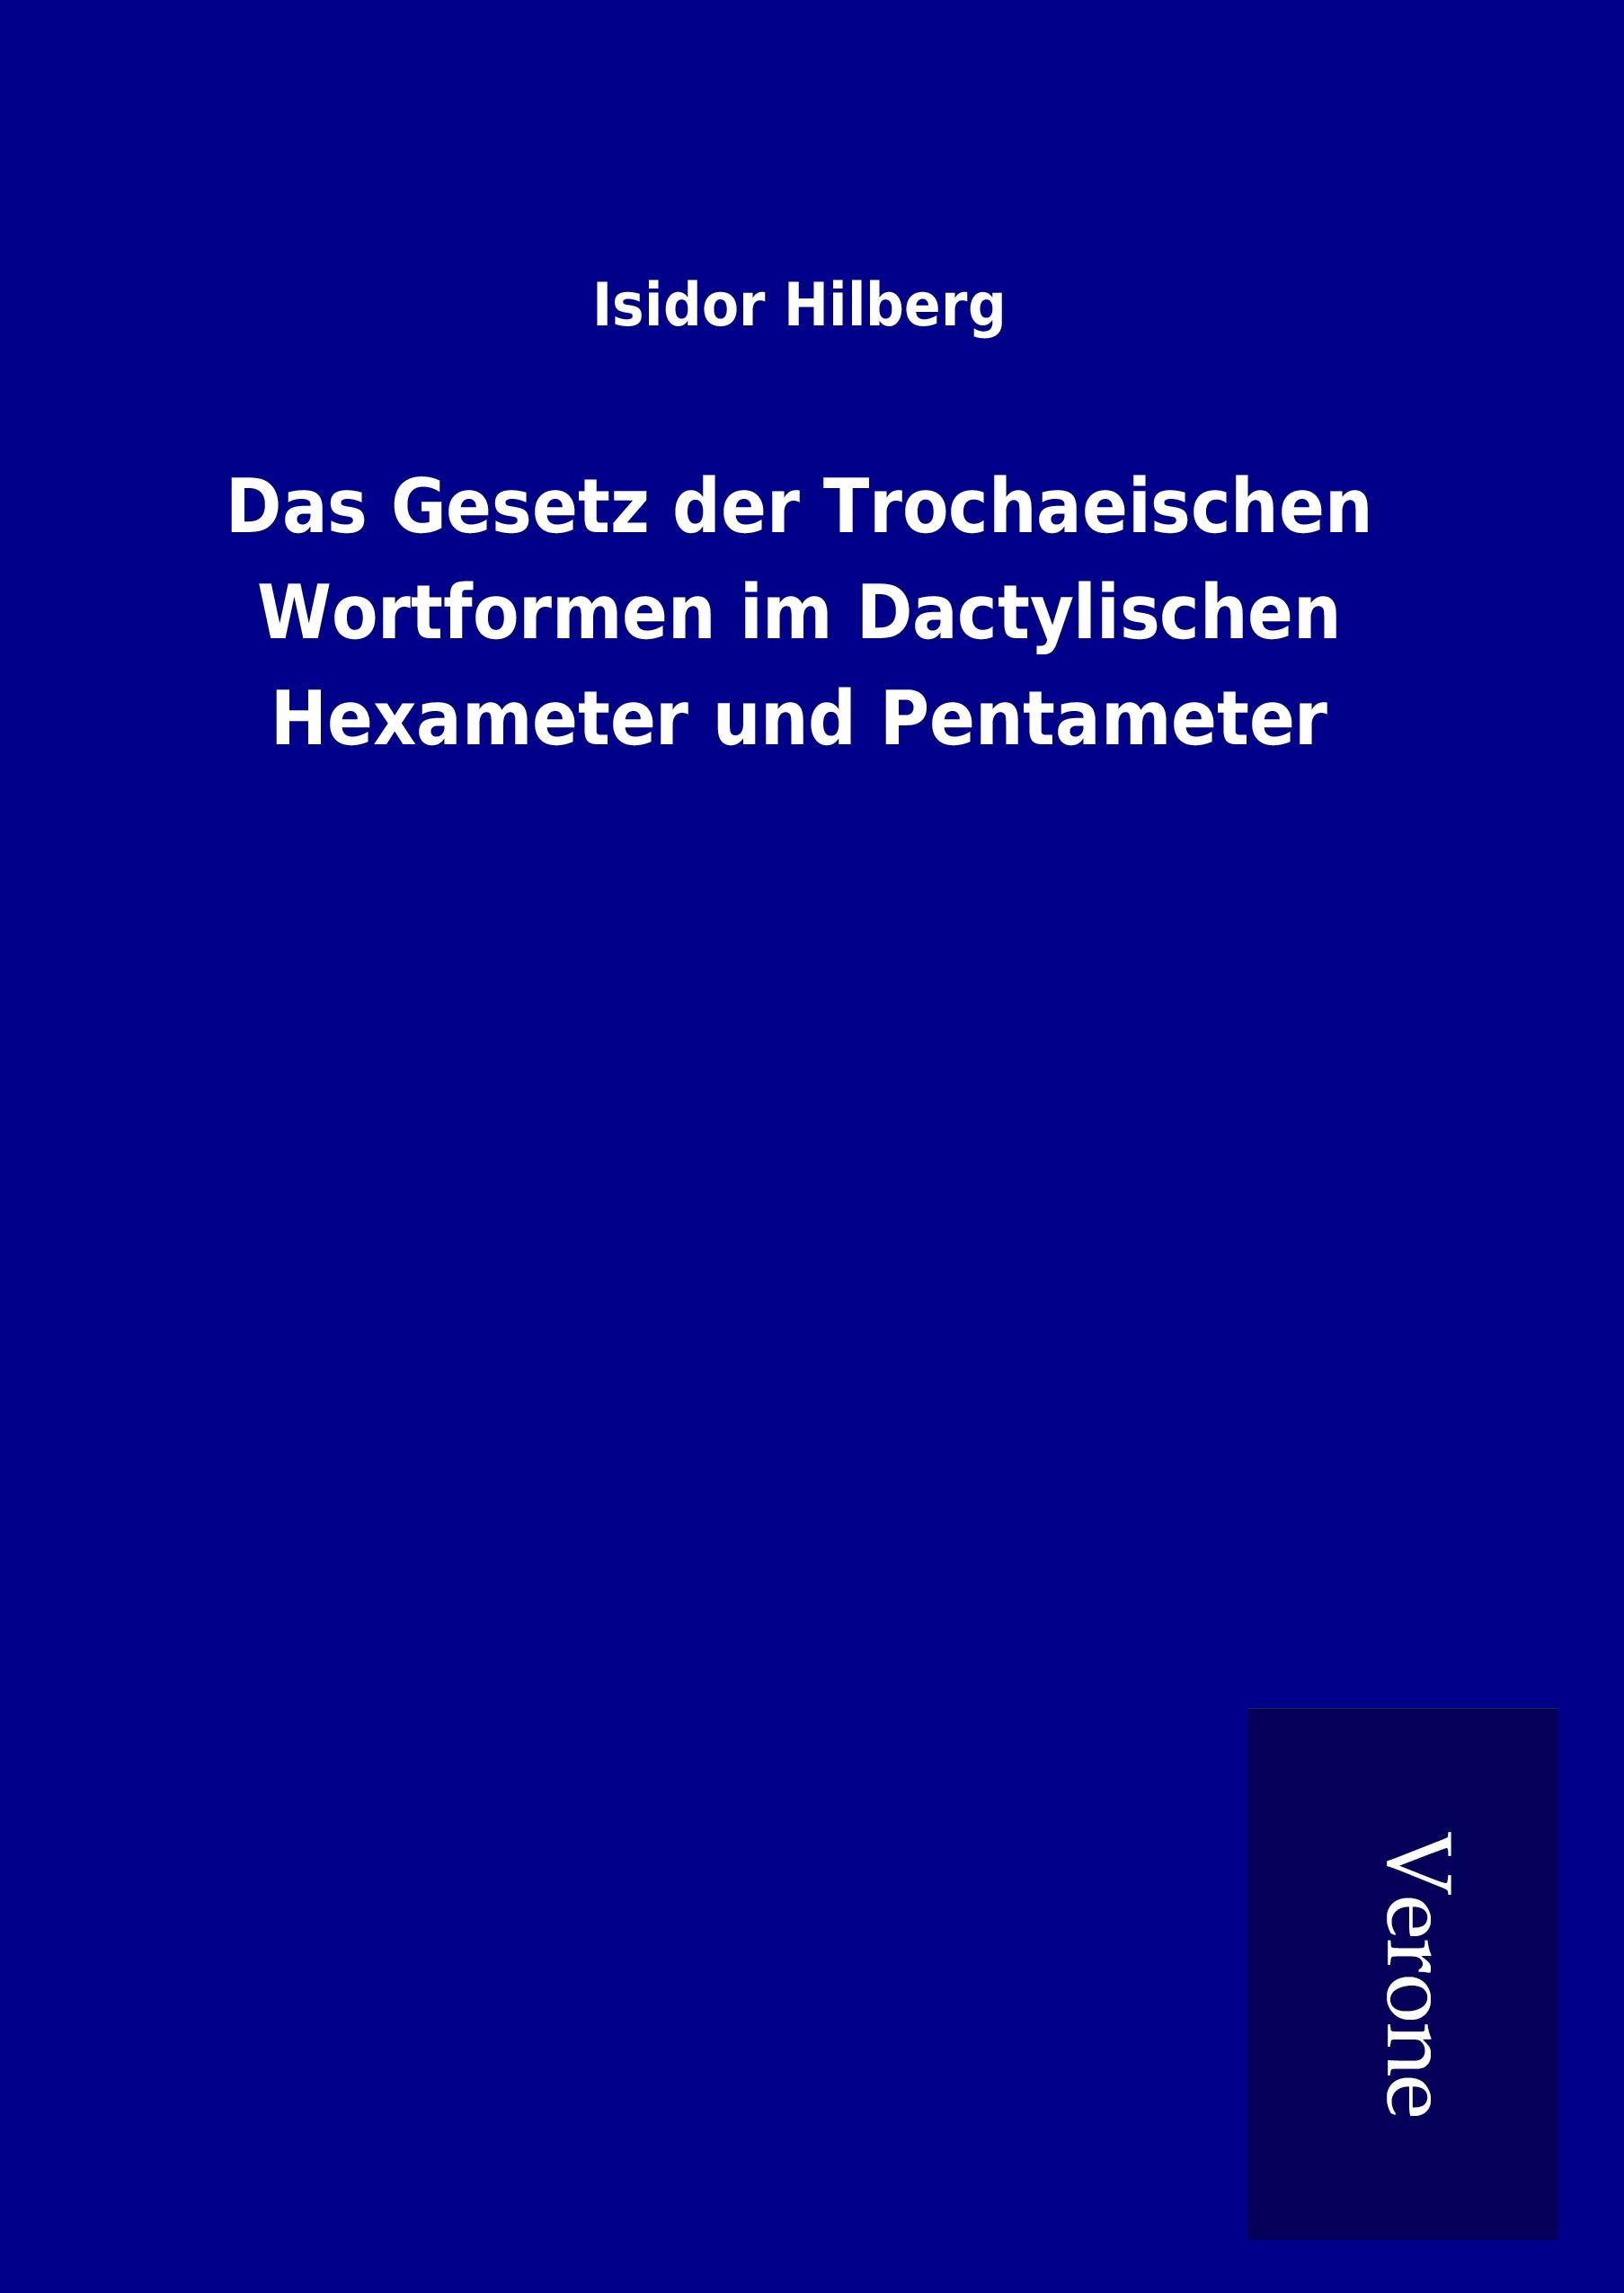 Das Gesetz der Trochaeischen Wortformen im Dactylischen Hexameter und Pentameter - Hilberg, Isidor